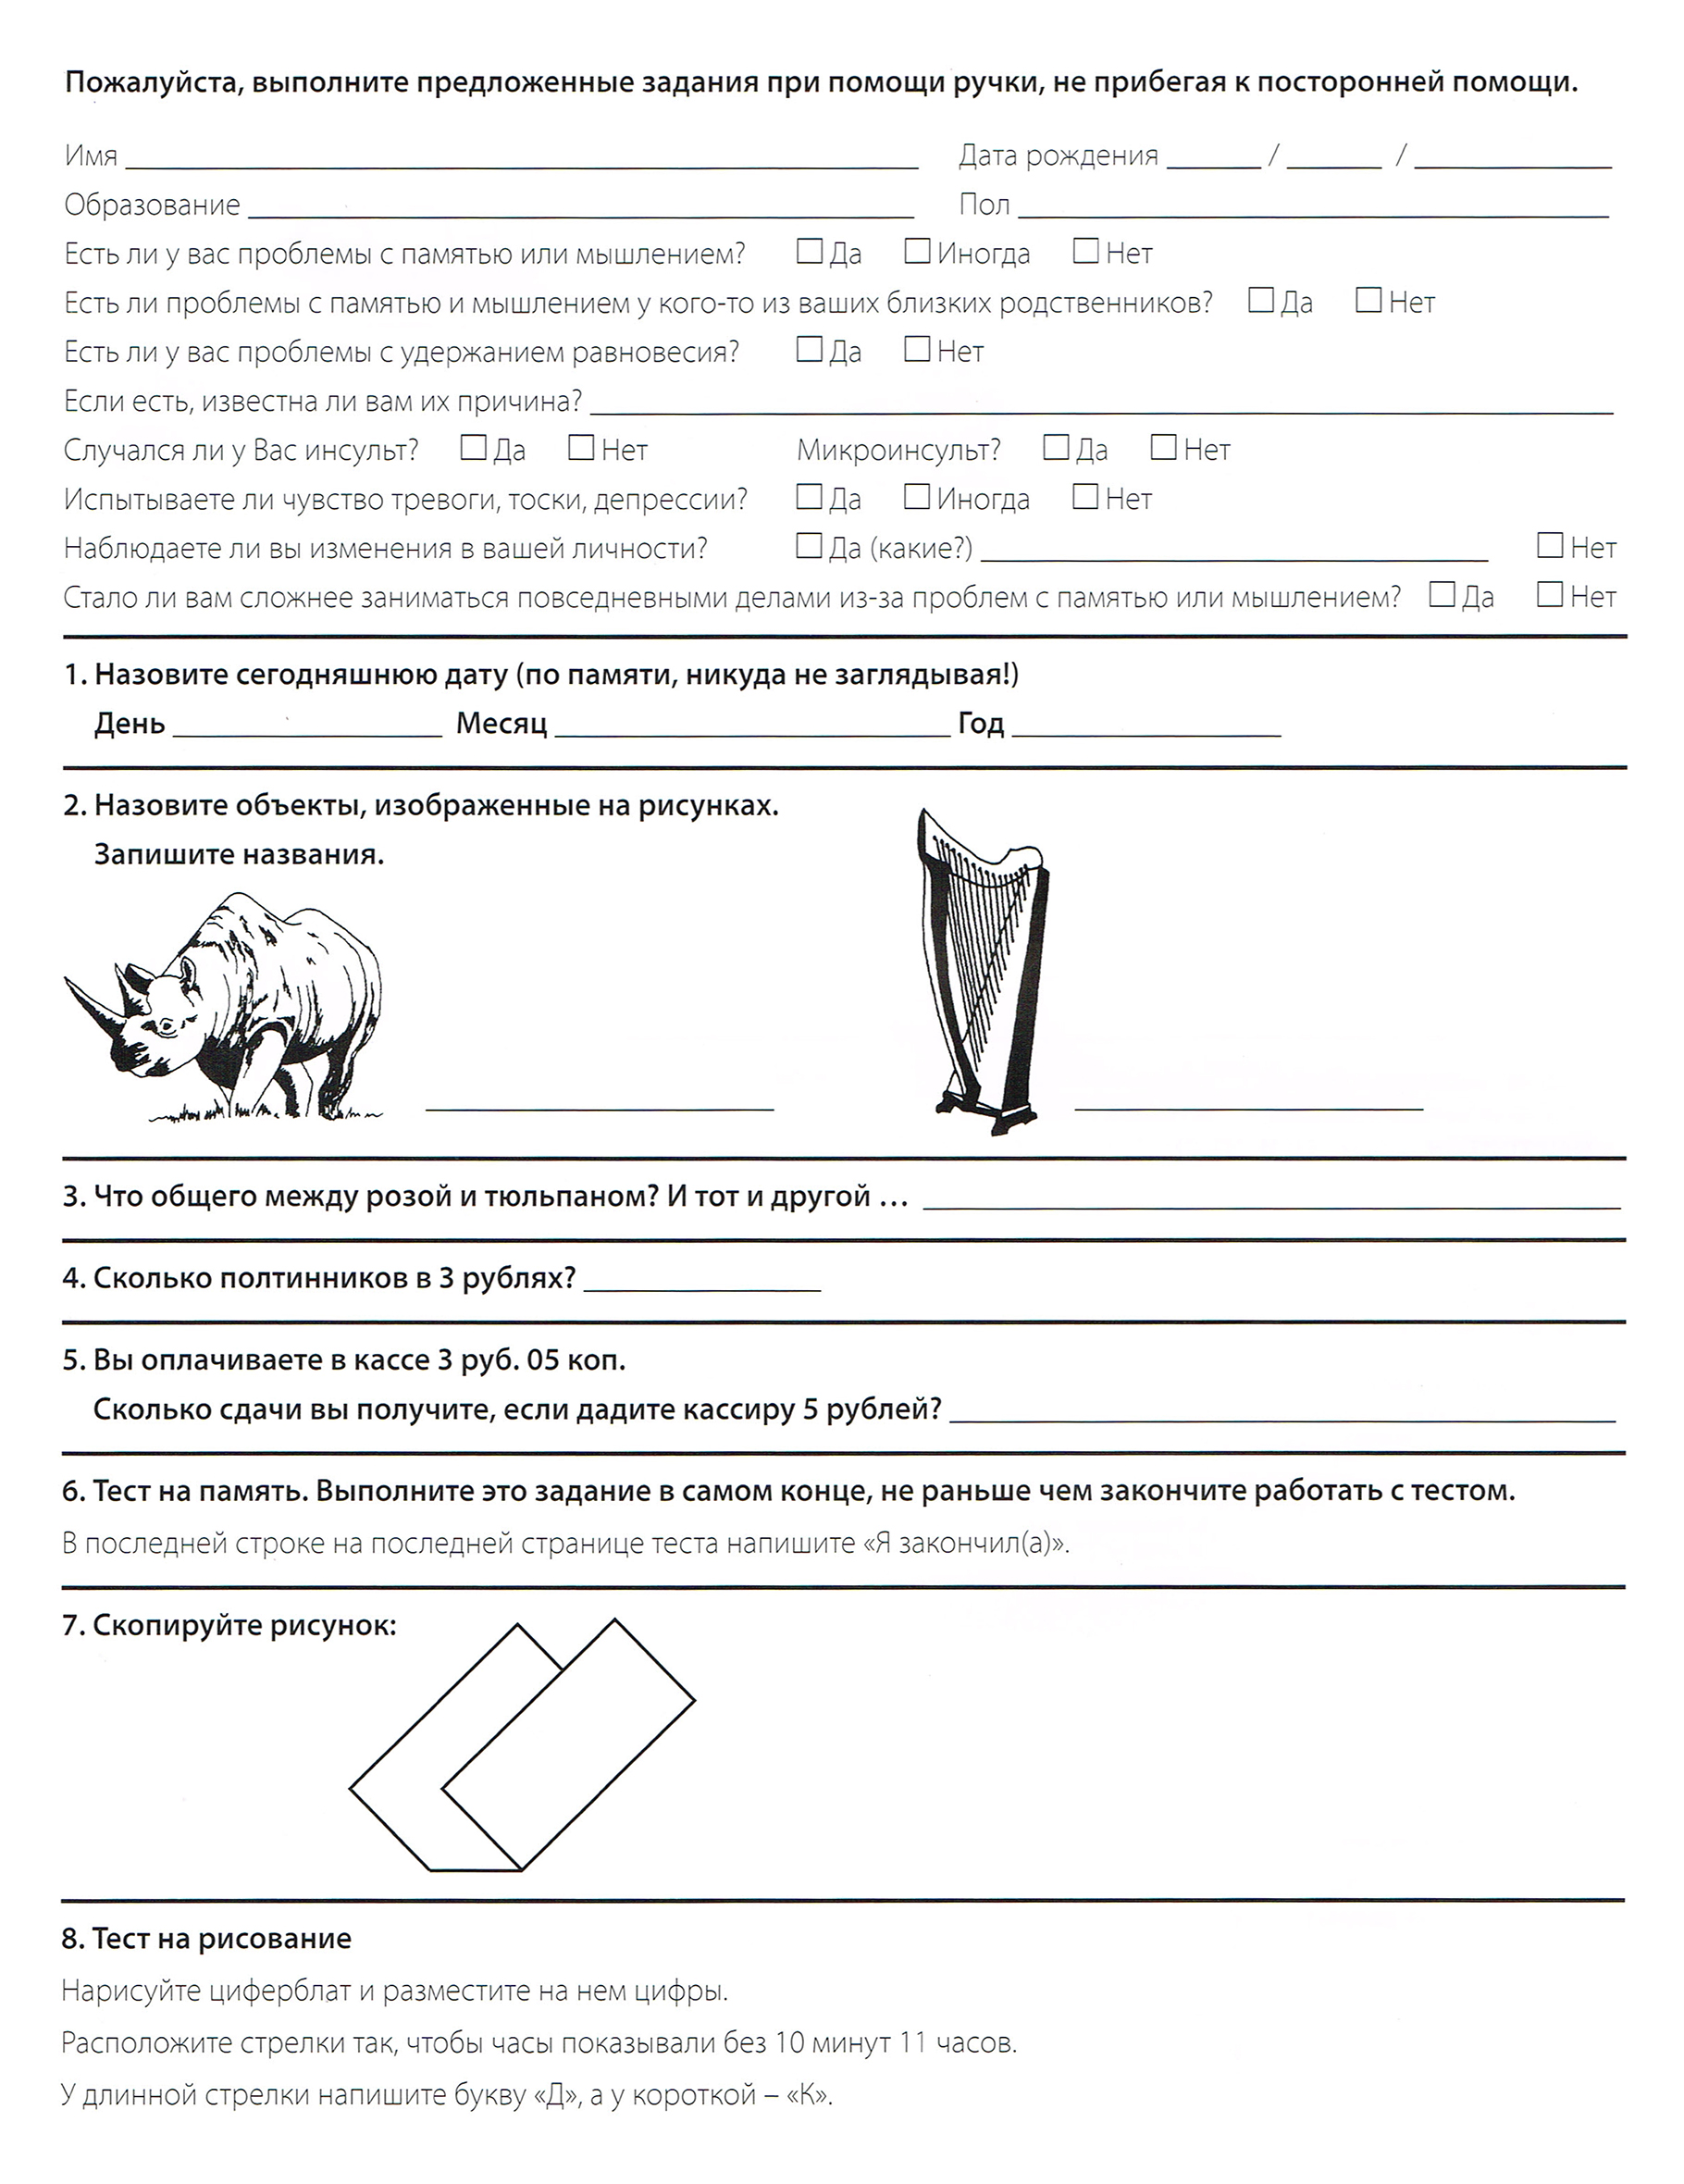 Тест SAGE можно скачать, распечатать и предложить родителям. Источник: dementcia.ru